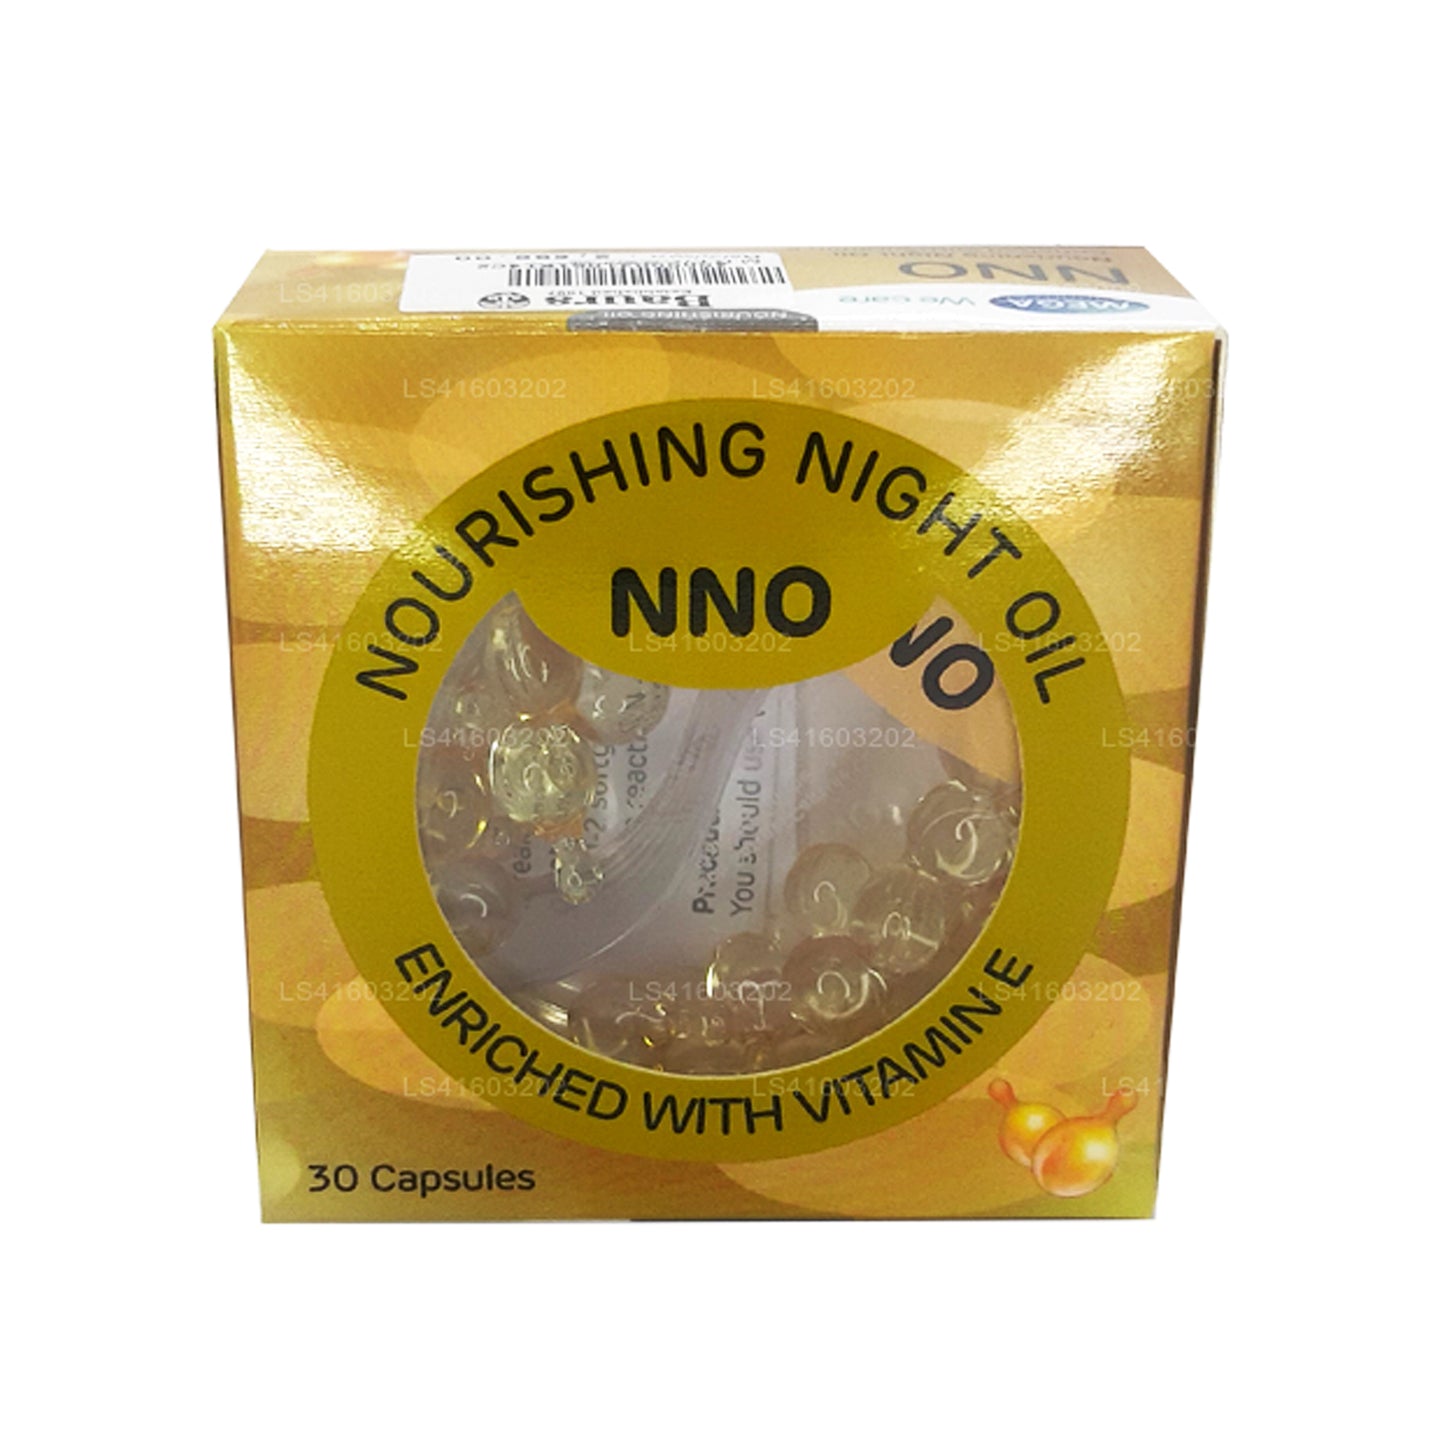 NNO Nourishing Night Oil med vitamin E och jojobaolja (30 Caps)